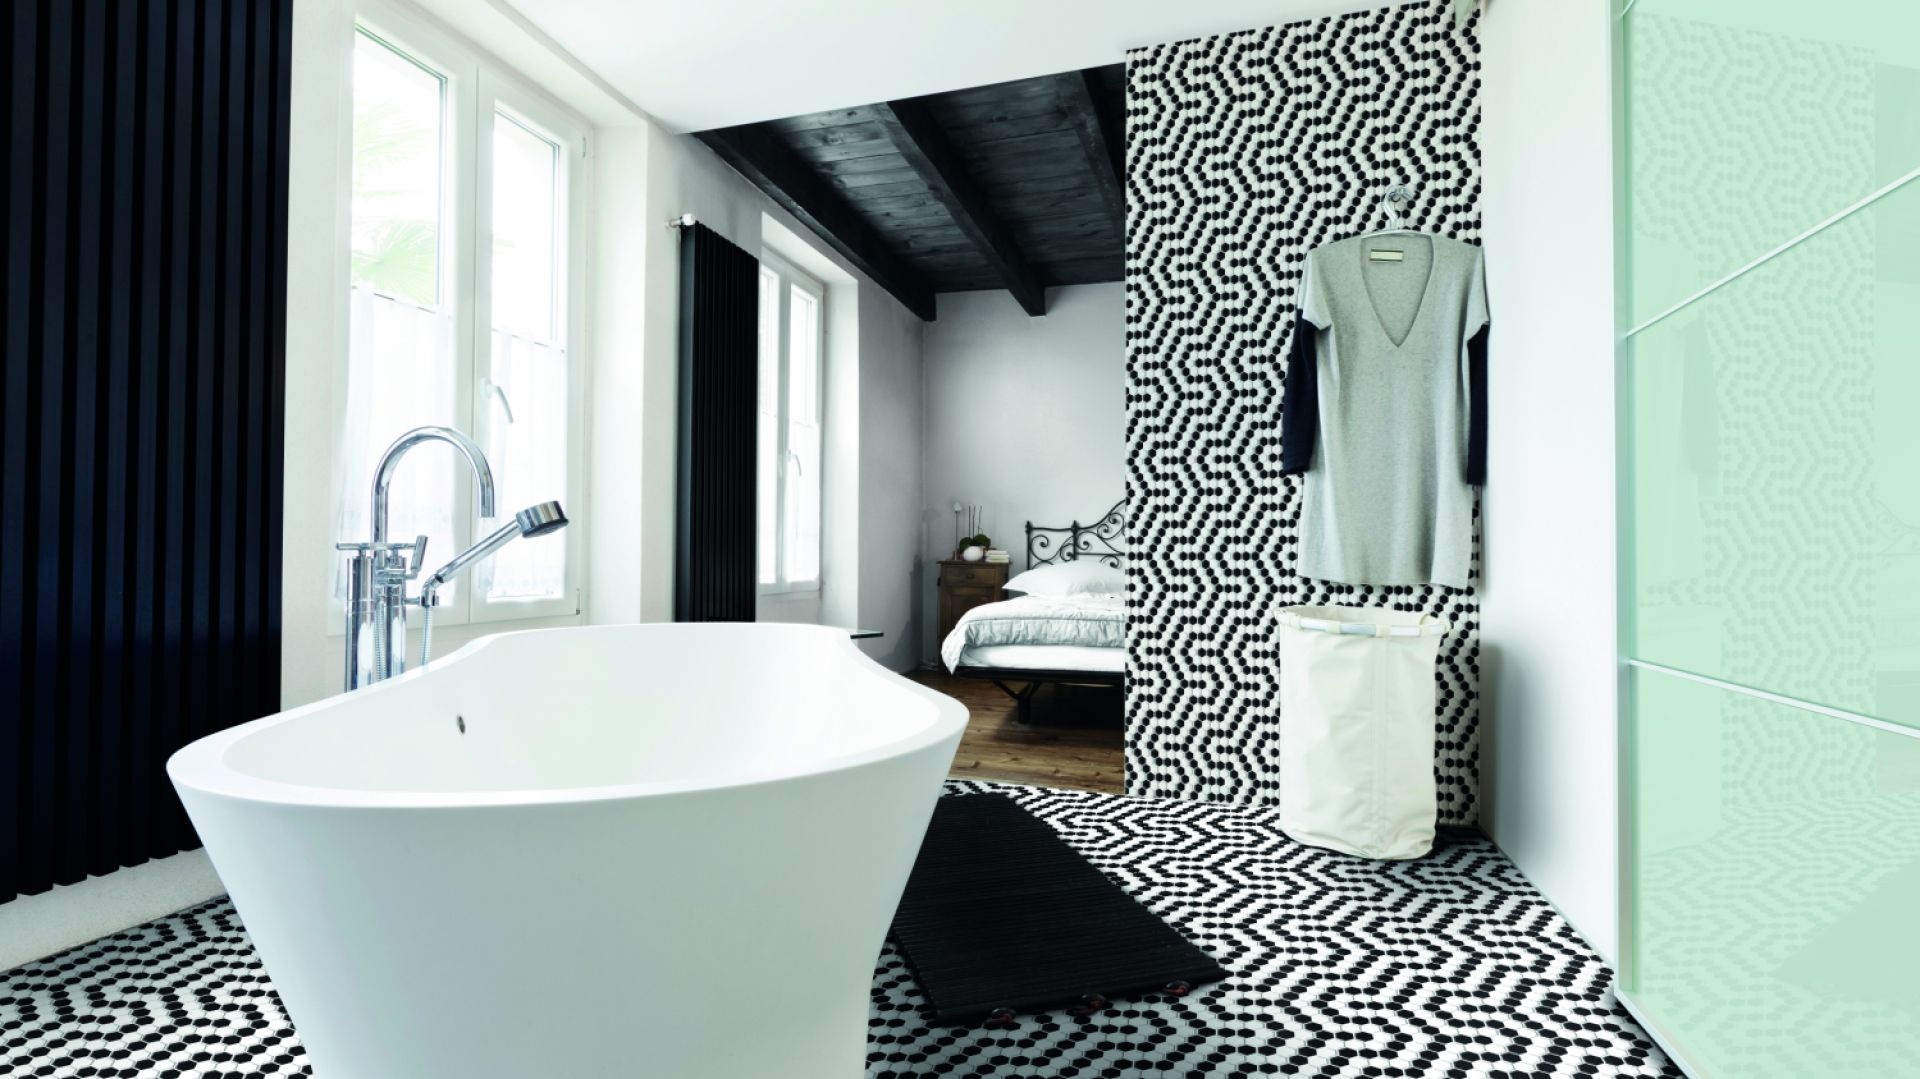 Elegancka łazienka: kolekcja płytek w kolorze black & white